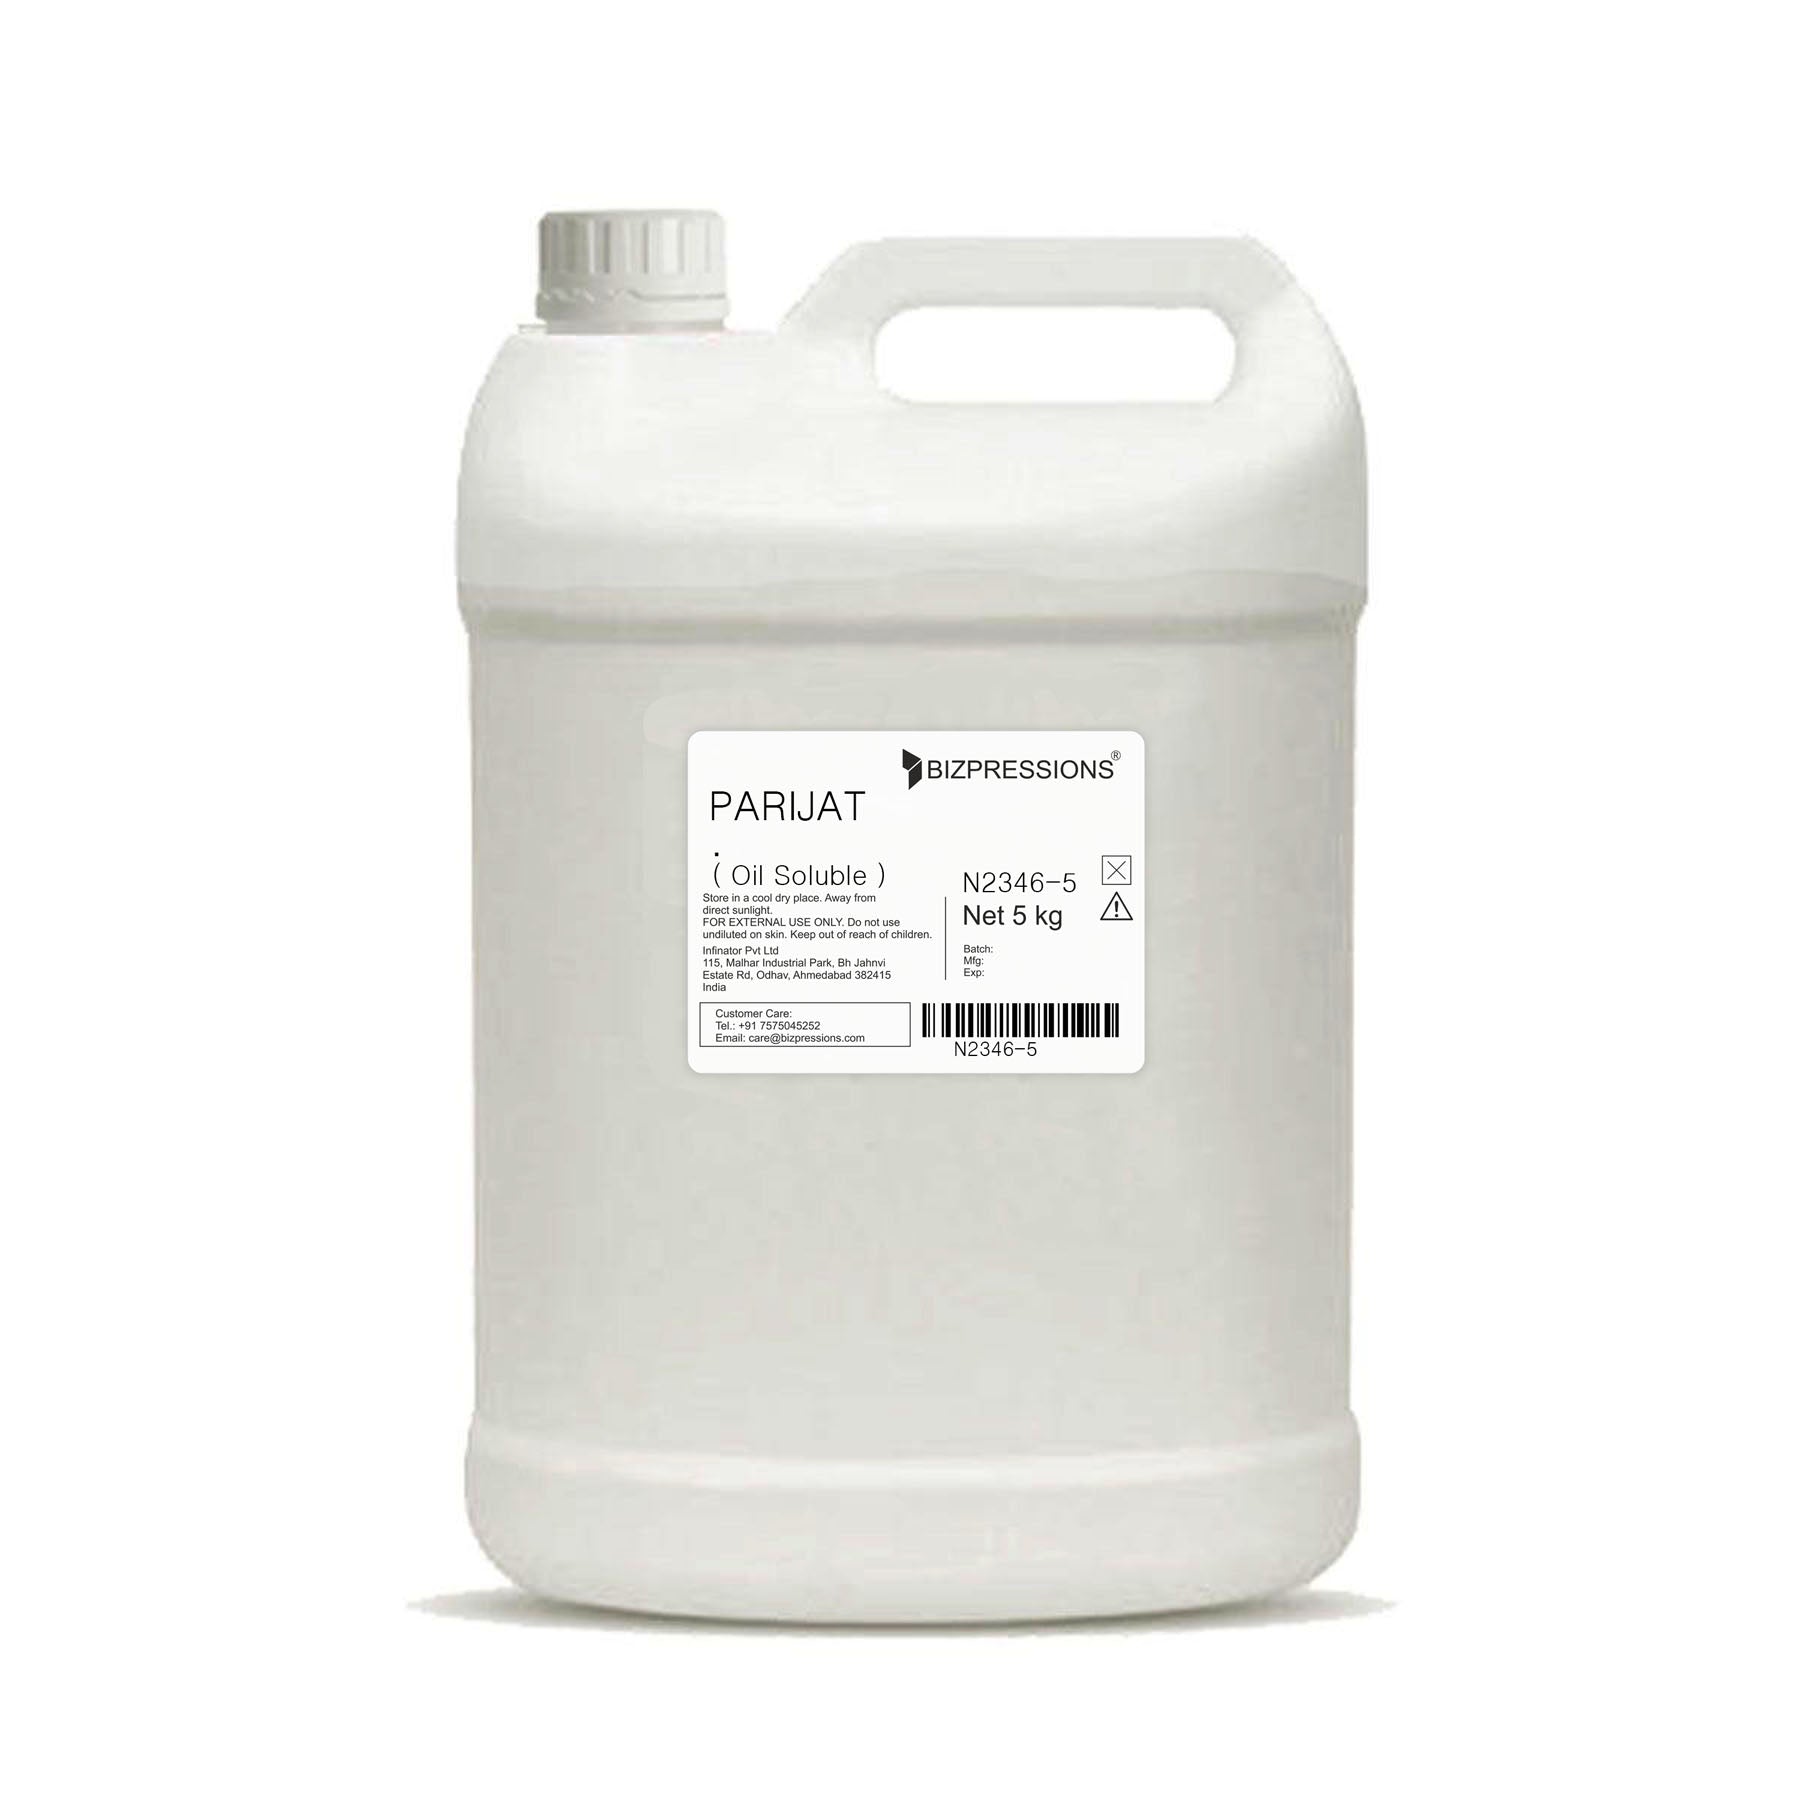 PARIJAT - Fragrance ( Oil Soluble ) - 5 kg